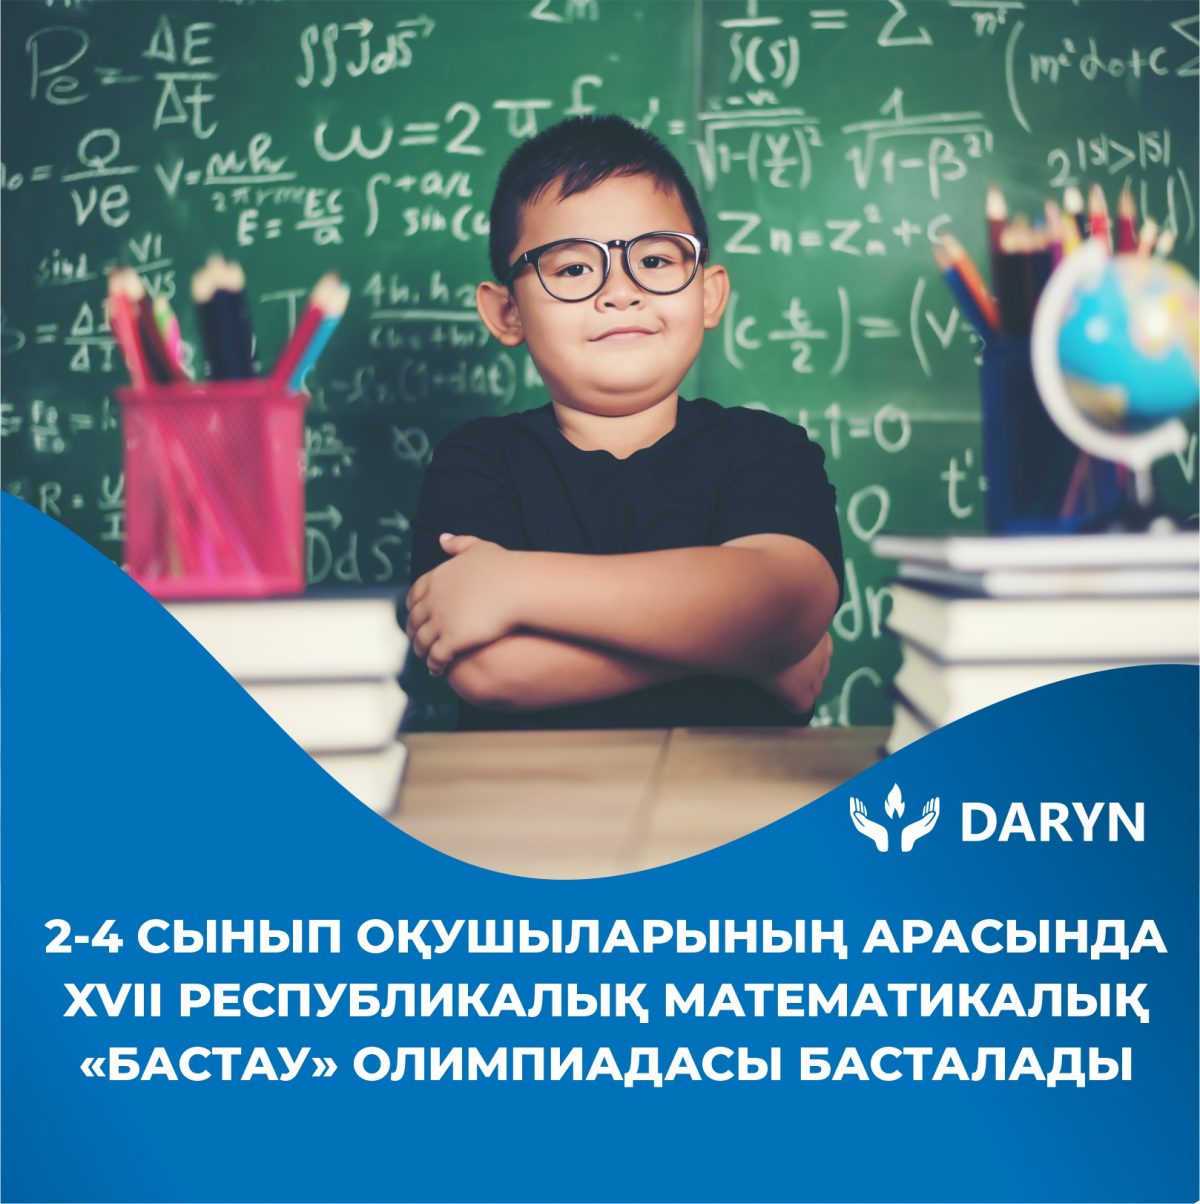 Алматы қаласында Республикалық физика-математикалық мектебі базасында 2-4 сынып оқушыларына арналған «Бастау» XVІІ республикалық математикалық олимпиадасы басталады